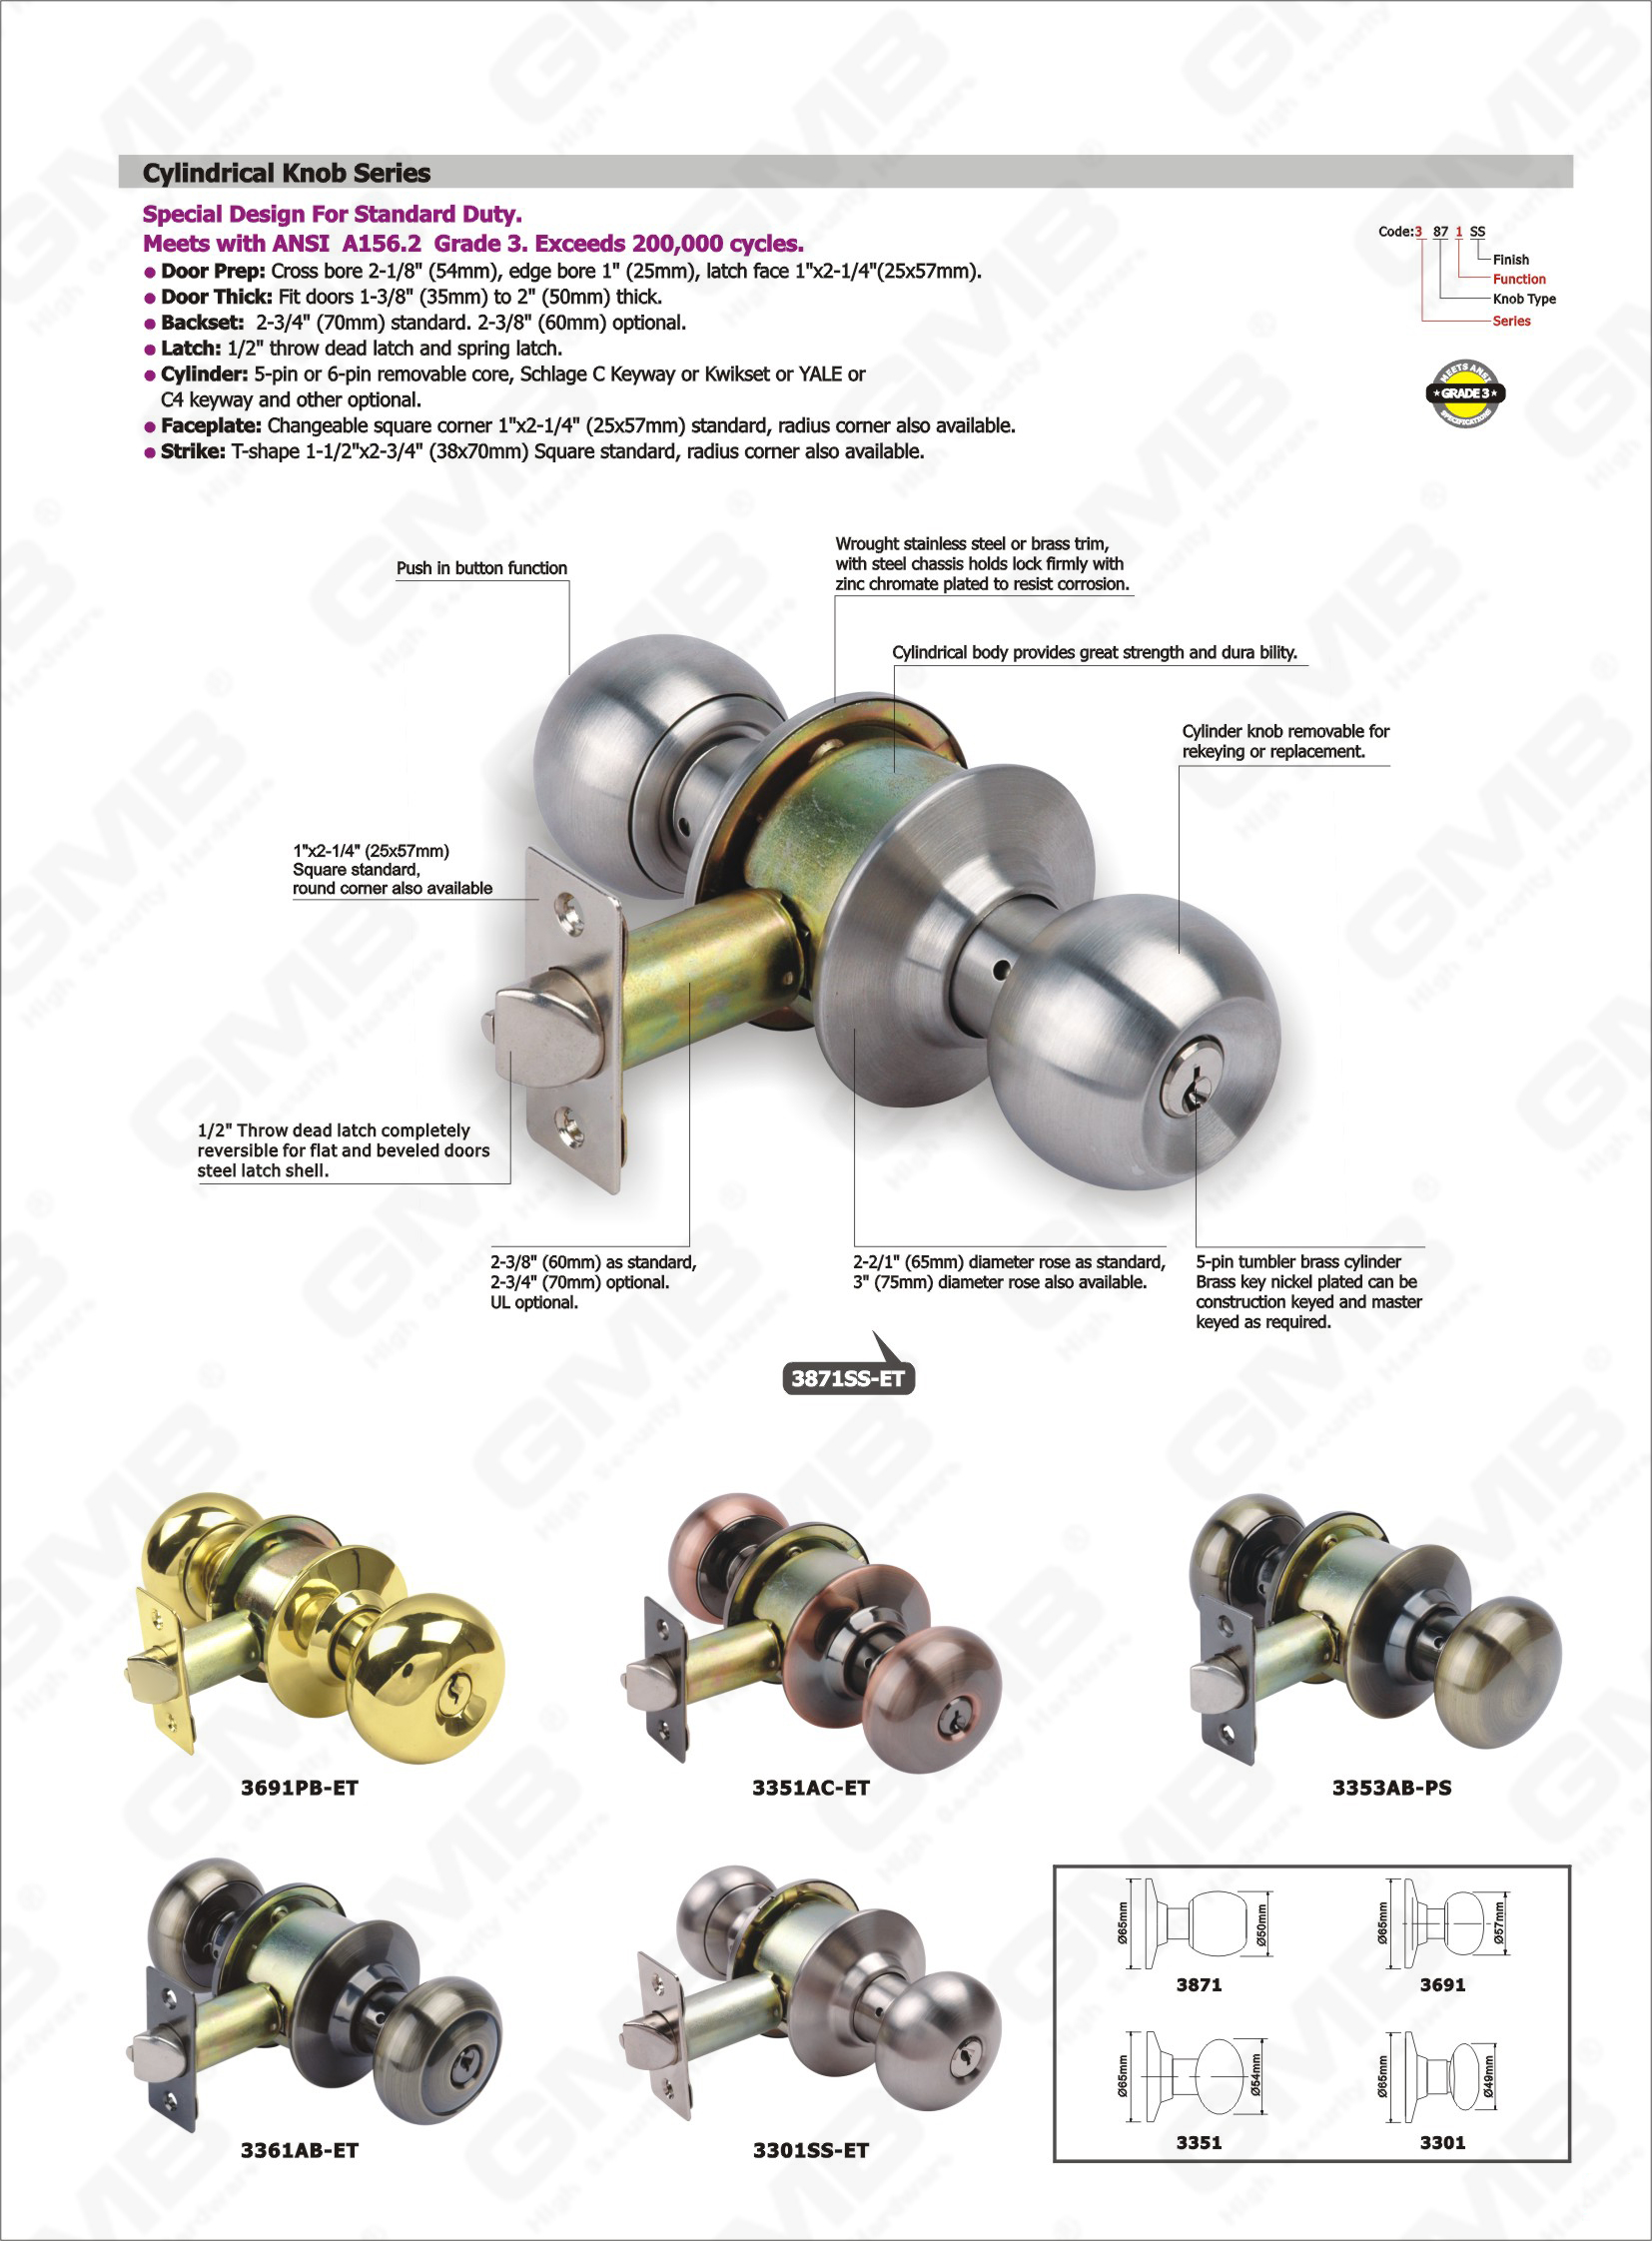 Zylinderknopf abnehmbar für die Wiederverschlüsselung oder Ersetzung Speziales Design ANSI Standard Zylindrischer Knopf-Lock-Serie (3301SS-ET)